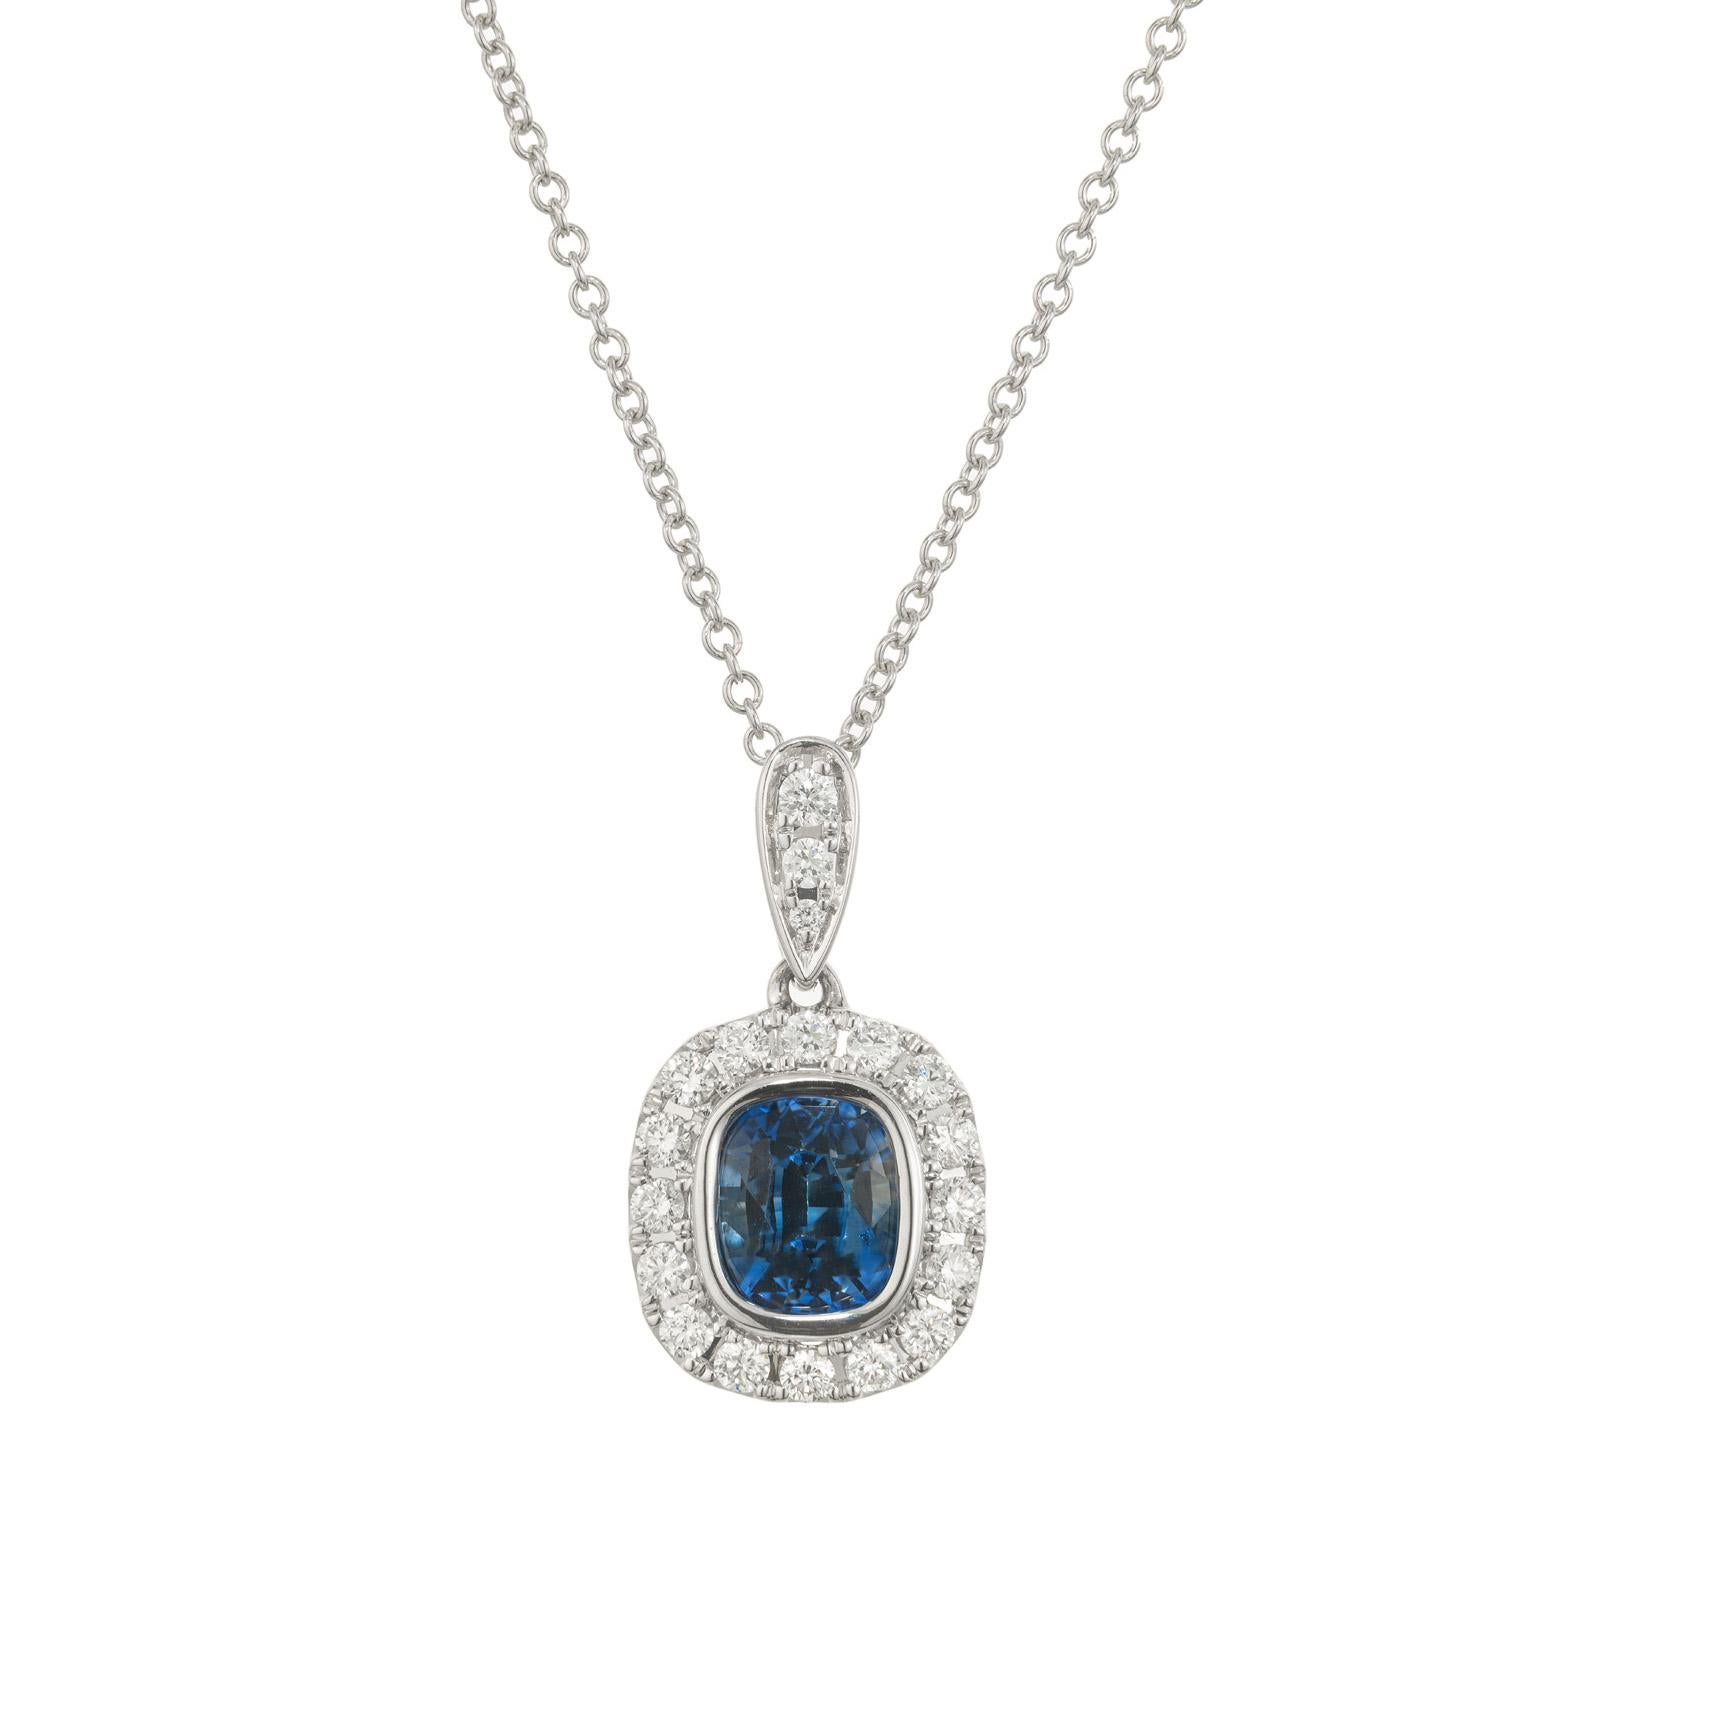 Collier pendentif en saphir coussin bleu pervenche certifié ICA et diamant du Sri Lanka. Au centre de ce pendentif se trouve un saphir de 1,05ct taillé en coussin. Il est rehaussé d'un halo de diamants ronds de pleine taille. La chaîne en or blanc